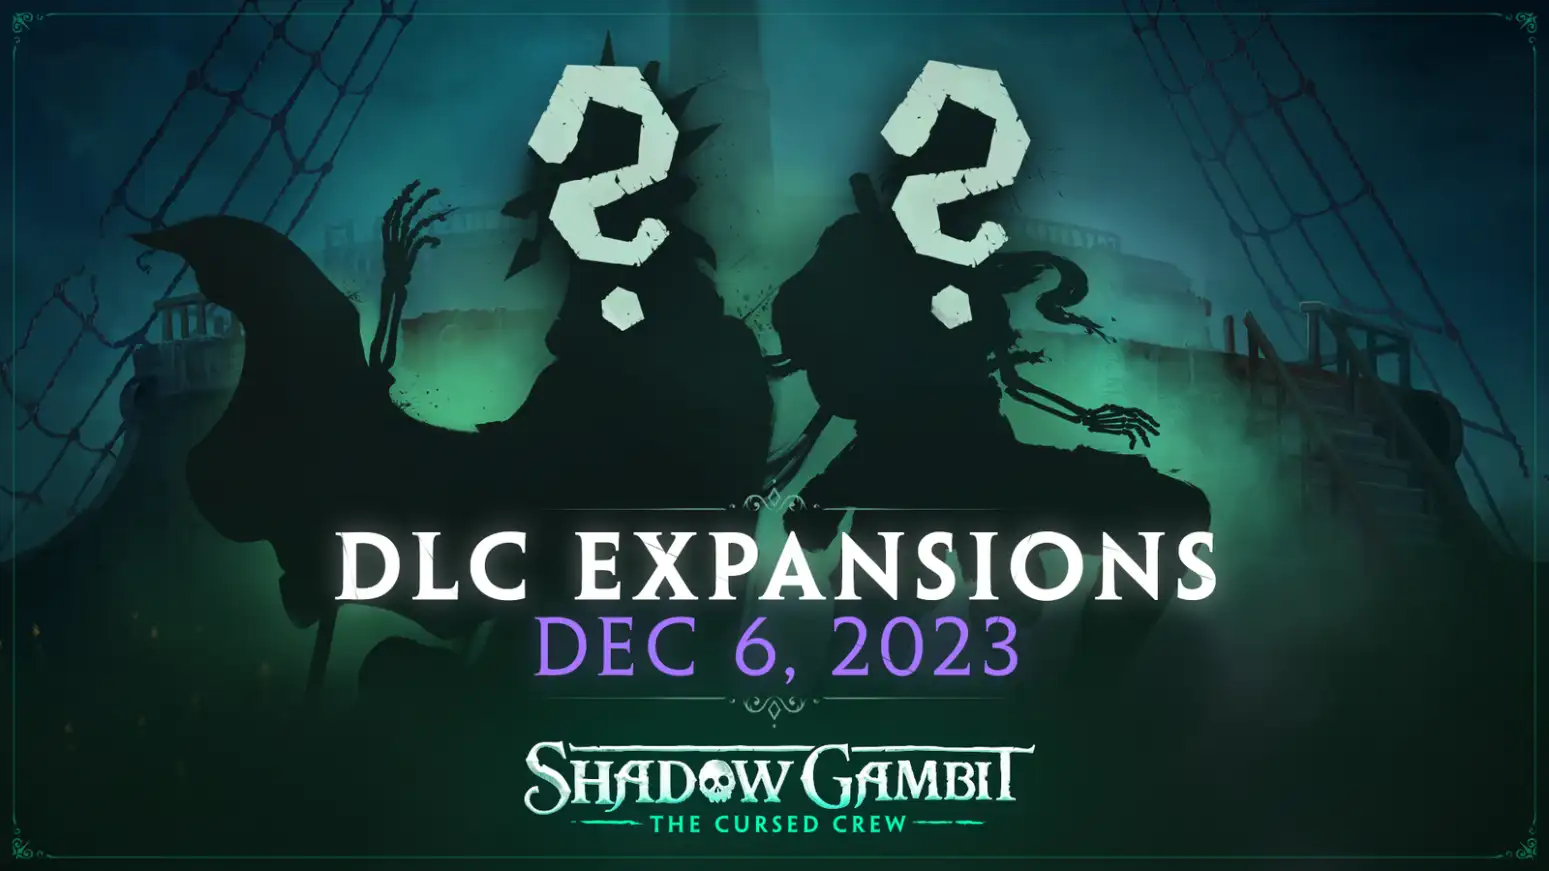 Shadow Gambit The Cursed Crew, lo studio rilascia due DLC prima di chiudere battenti